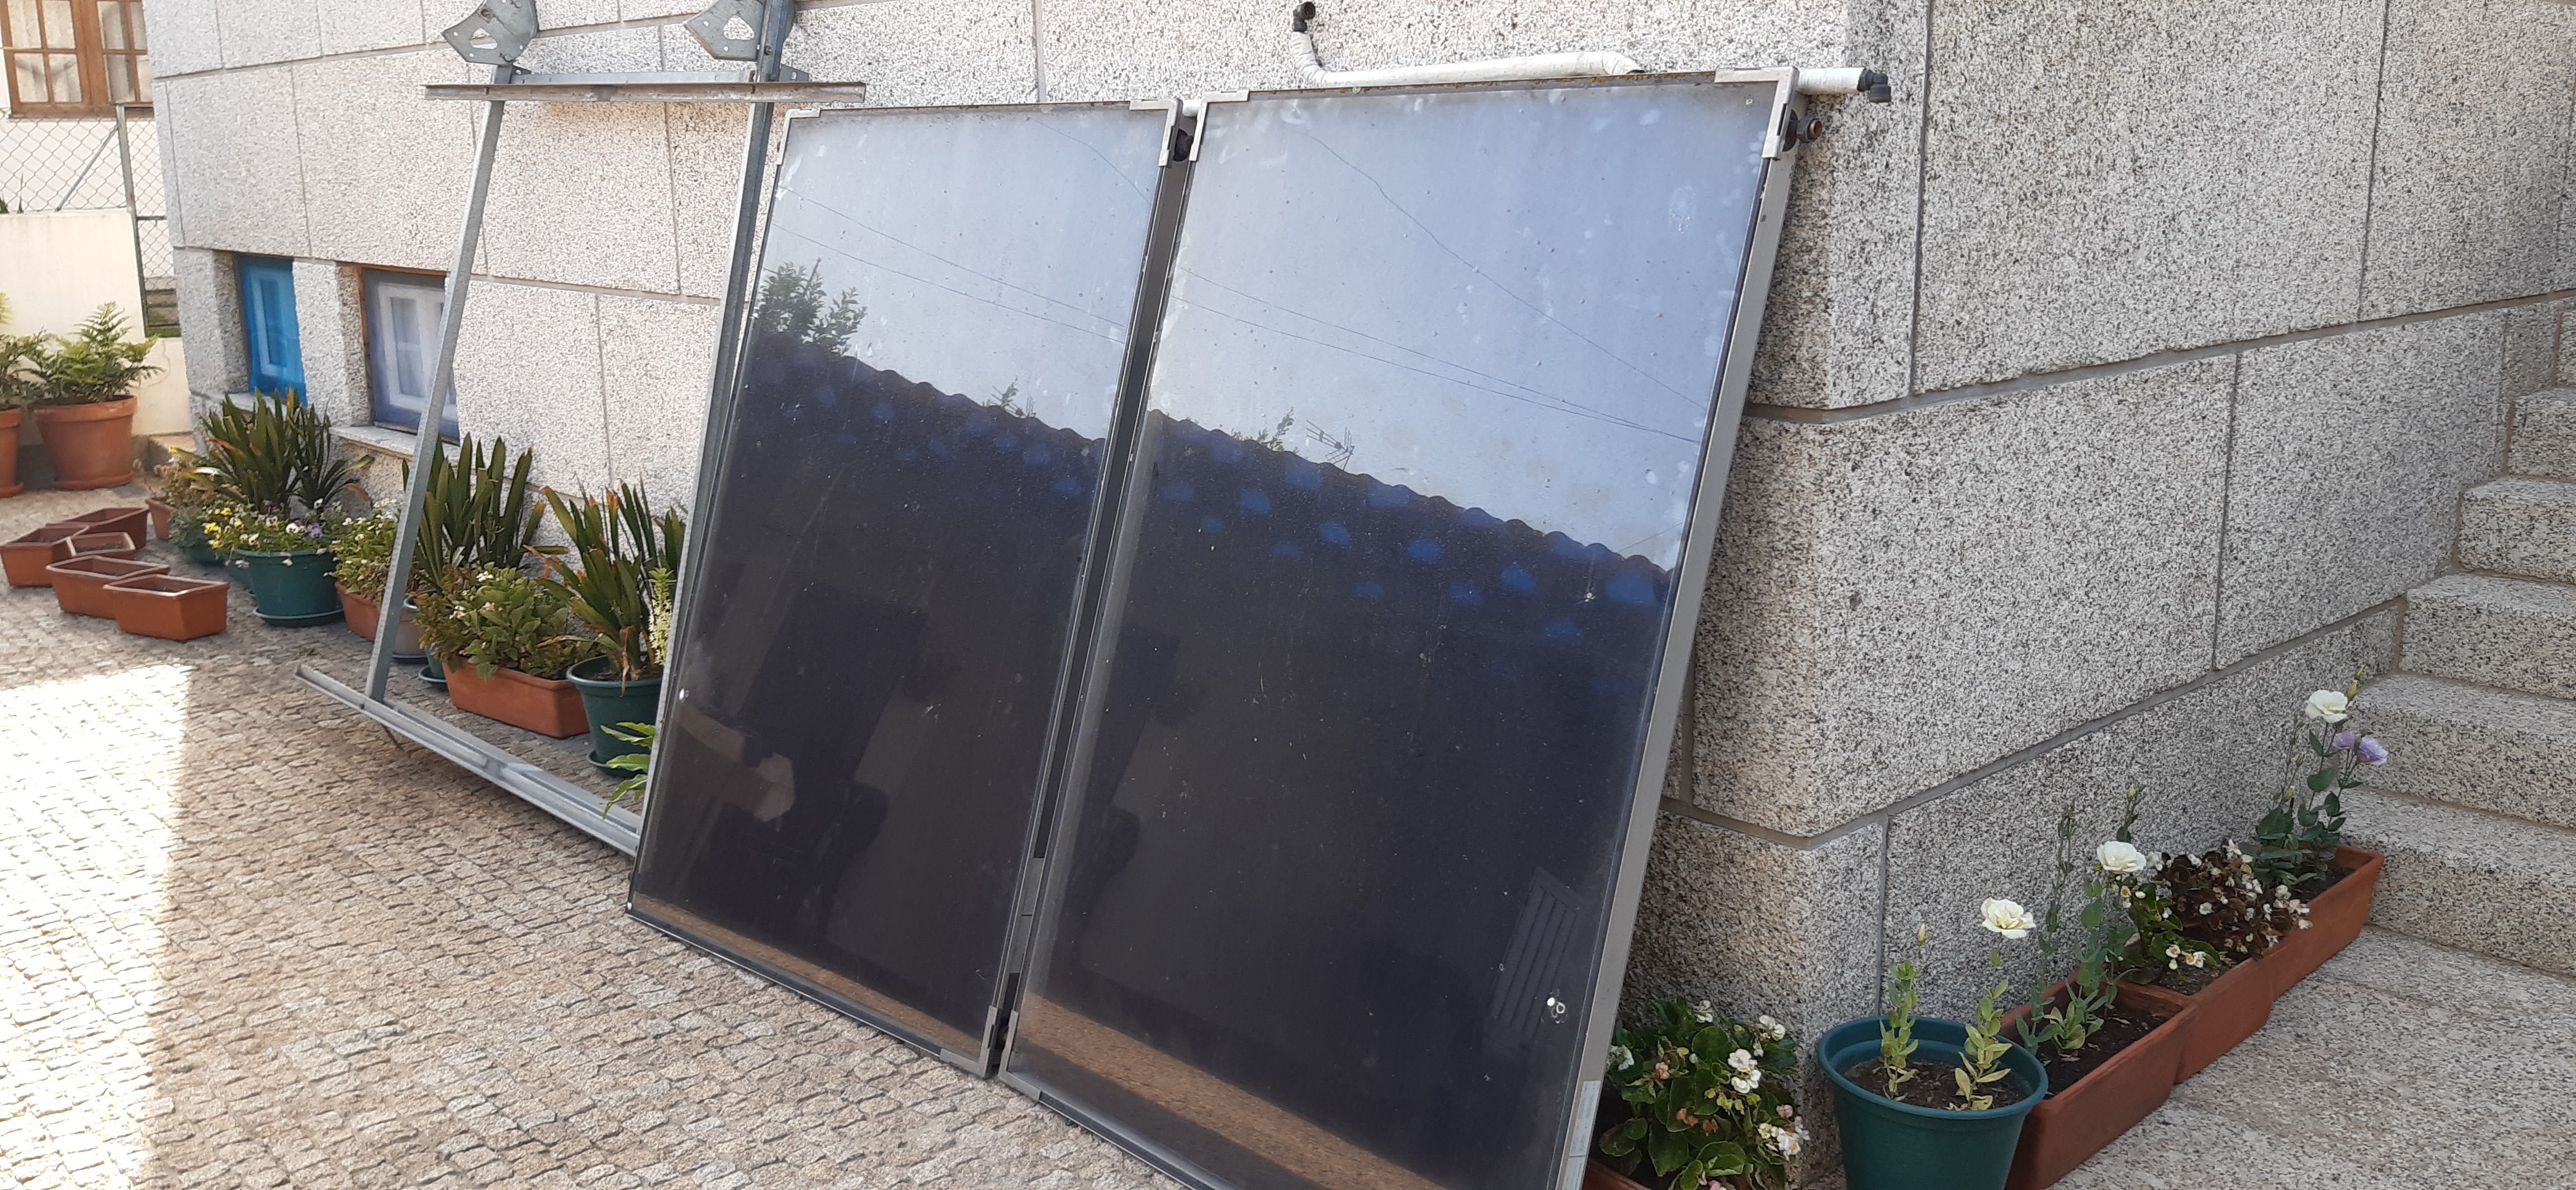 Painéis solares para aquecimento de águas sanitárias